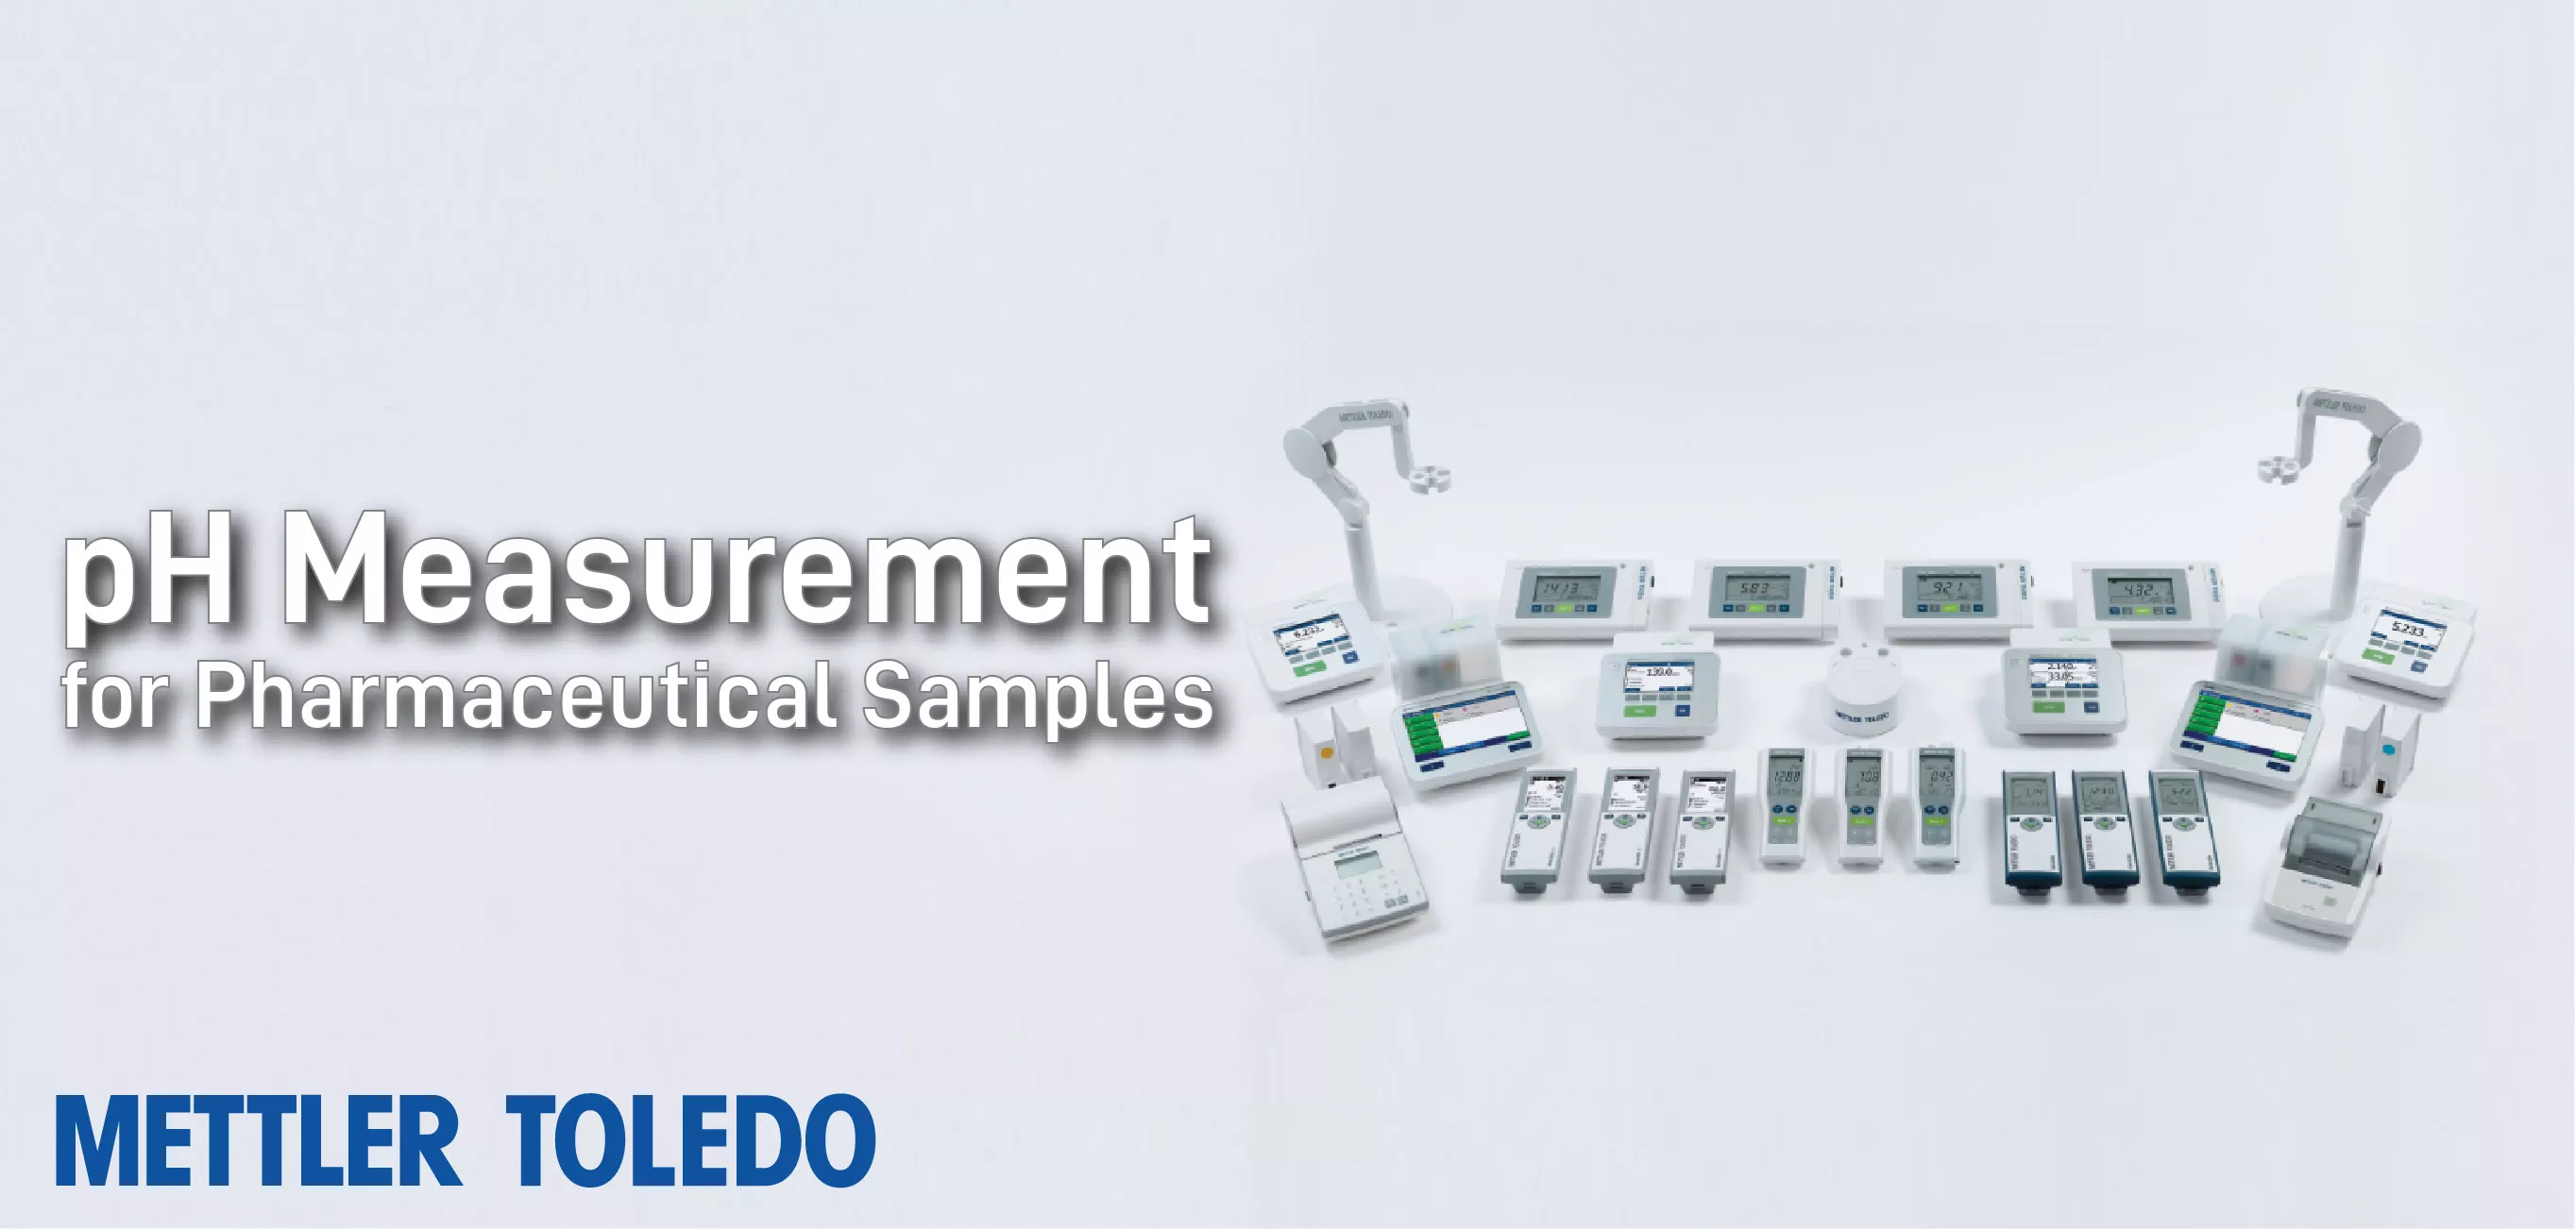 pH Measurement for Pharmaceutical Samples by METTLER TOLEDO Webinar